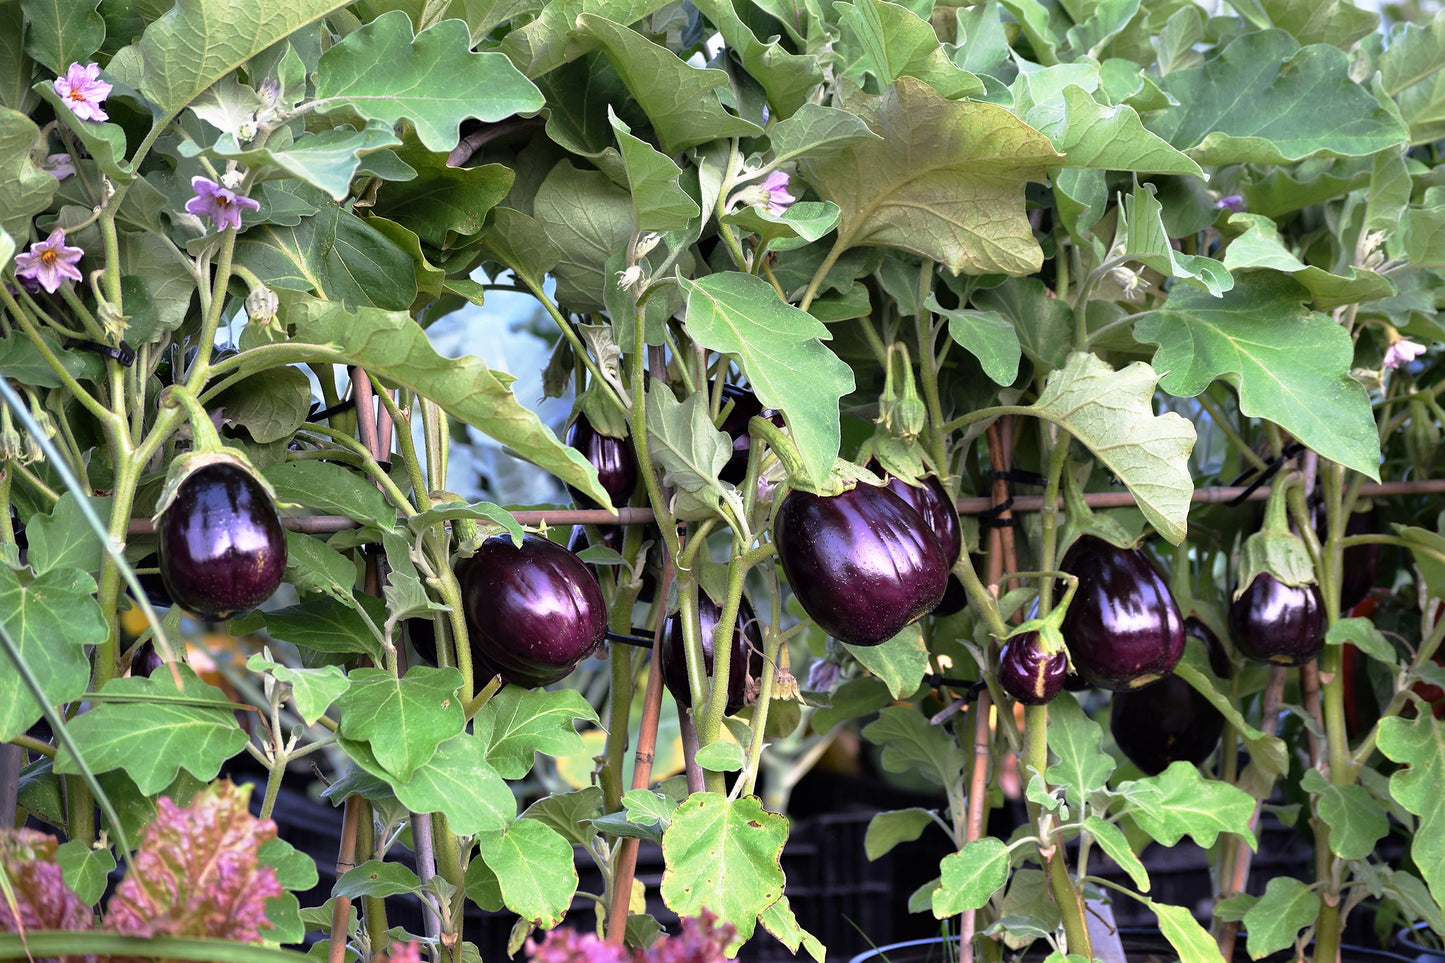 300 FLORIDA MARKET EGGPLANT Purple Aubergine Solanum Melongena Vegetable Seeds